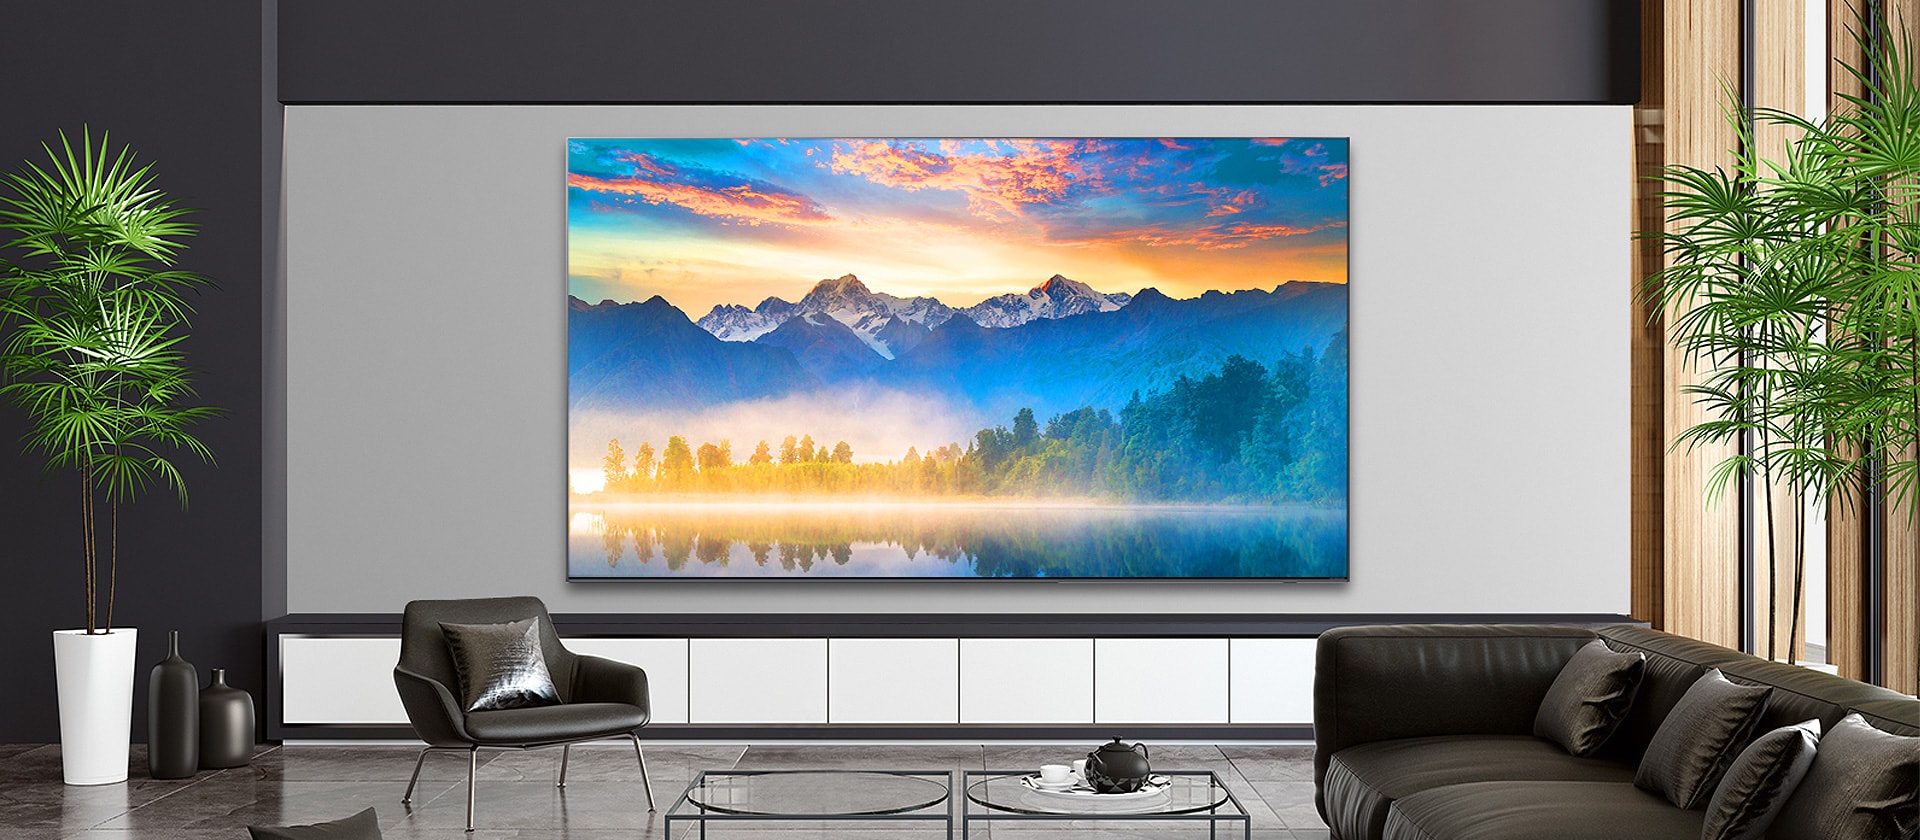 Un salon équipé d’un écran de téléviseur mural affiche une image de nature.